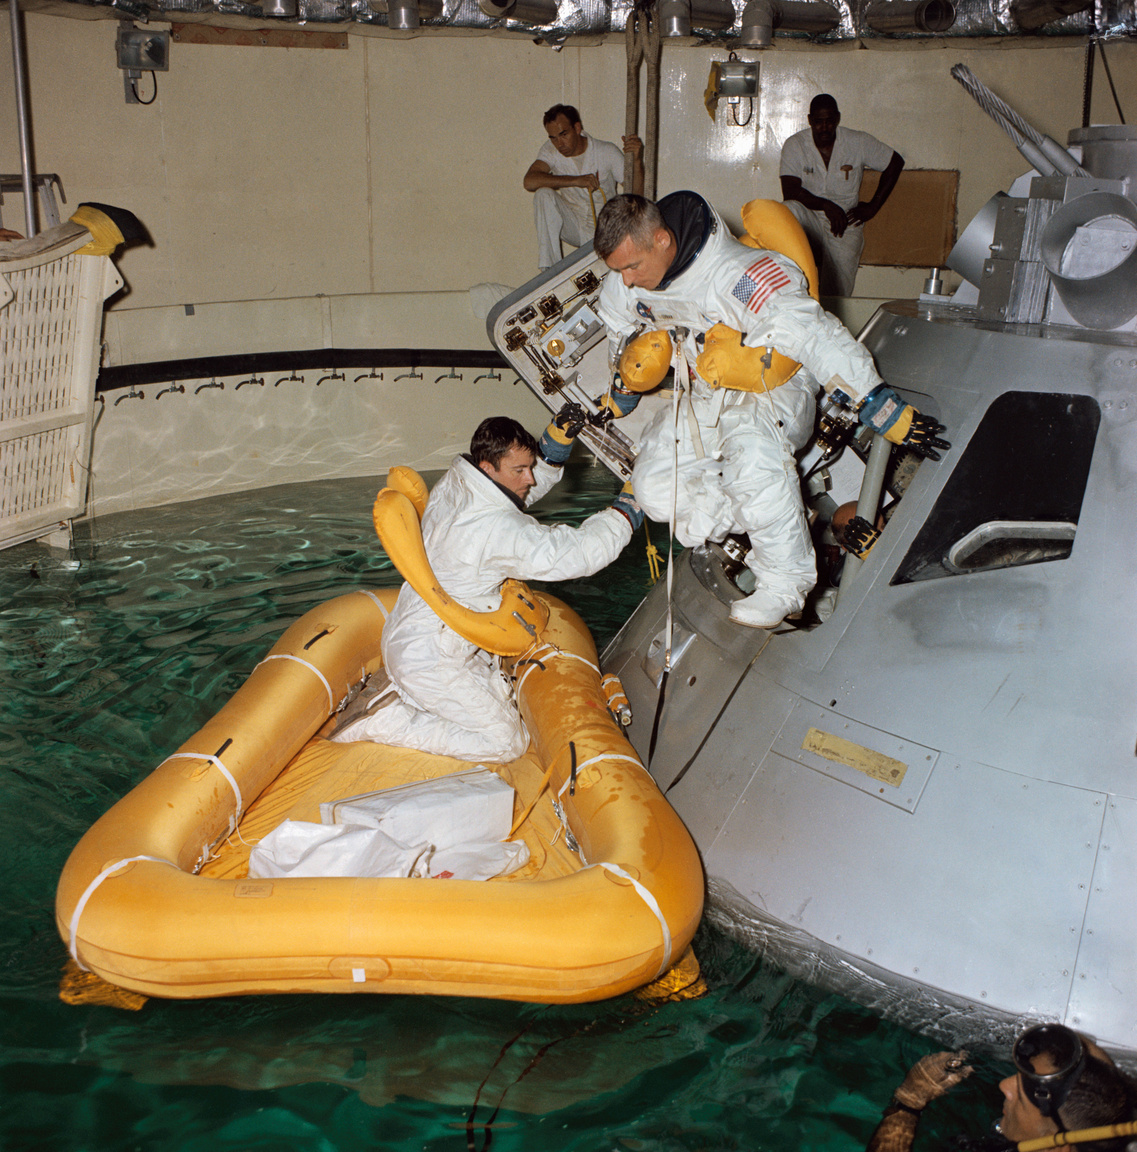 1968. augusztus 1. John W. Young (balra) és Eugene A. Cernan a vízre érkezés utáni kiszállást gyakorolják, harmadik társuk, Thomas P. Stafford még az Apollo űrhajó életnagyságú modelljének belsejében várakozik.